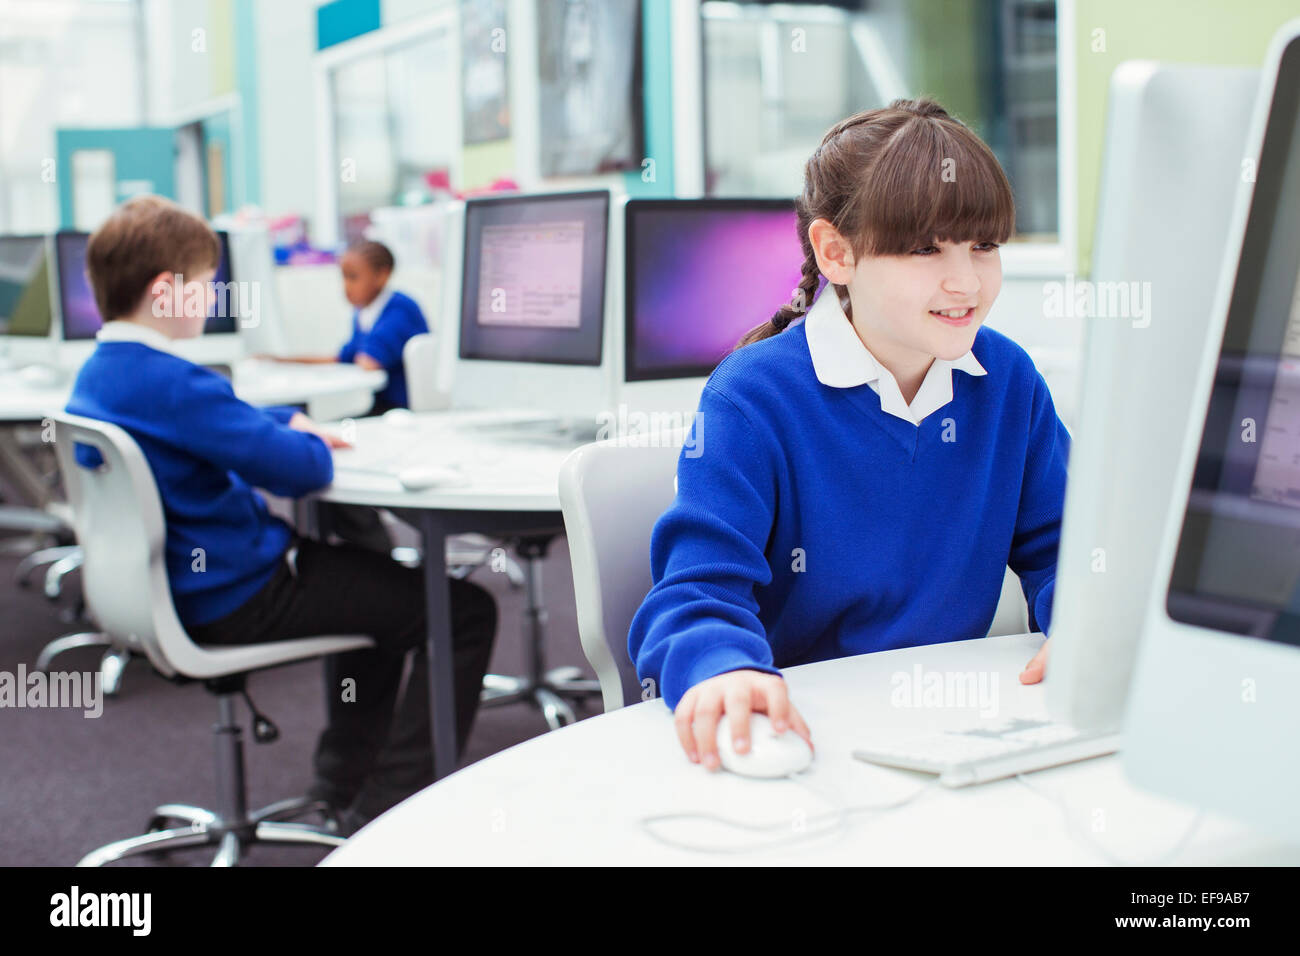 Les enfants de l'école primaire travaillant avec les ordinateurs pendant la leçon il Banque D'Images